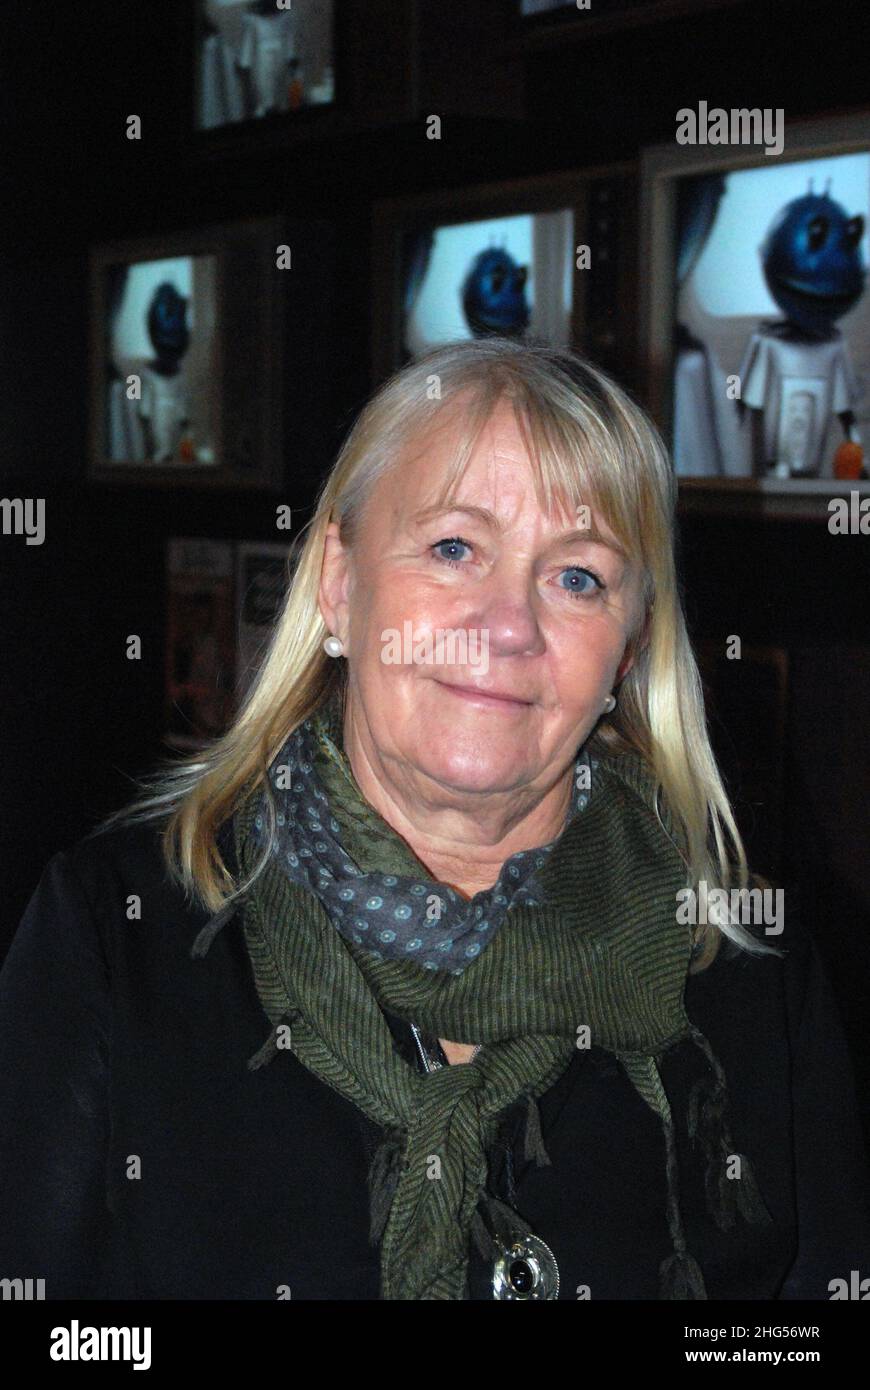 Ingmarie Halling, che ha fatto un tour con ABBA (make-up & costumer) nel 70s ed è ora direttore creativo/curatore del museo ABBA di Stoccolma. Svezia Foto Stock